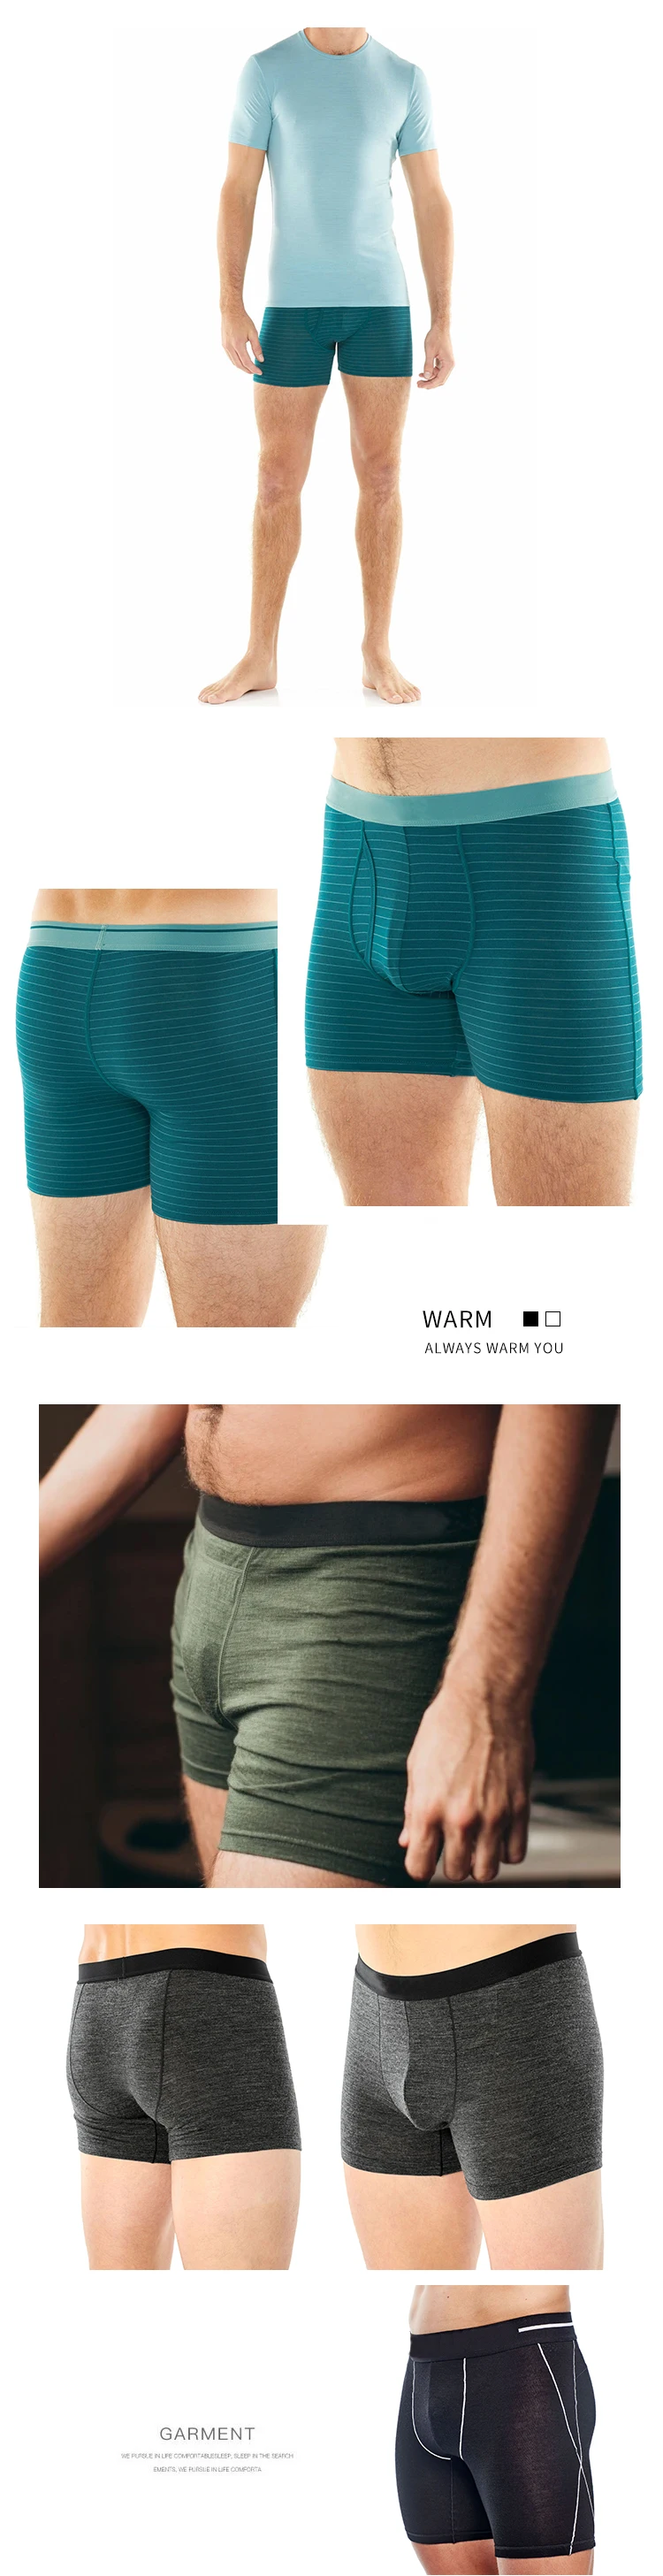 eneurp custom compression merino wool underwear boxers shorts ropa interior calzoncillos para hombre jovenes briefs for men's